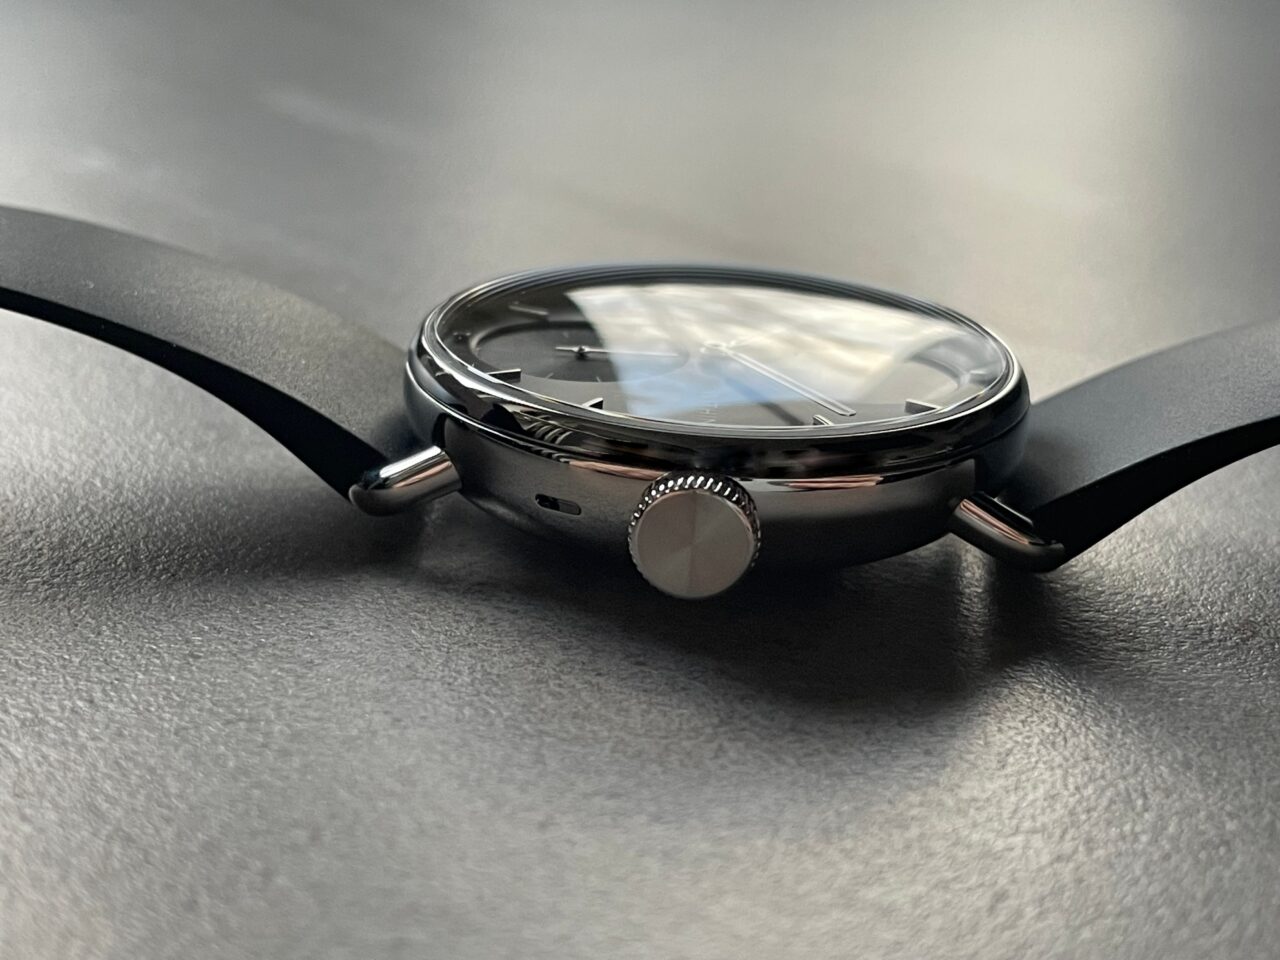 Zegarek na czarnym pasku z chromowaną obudową i wypukłym szkłem, położony na matowym podłożu.